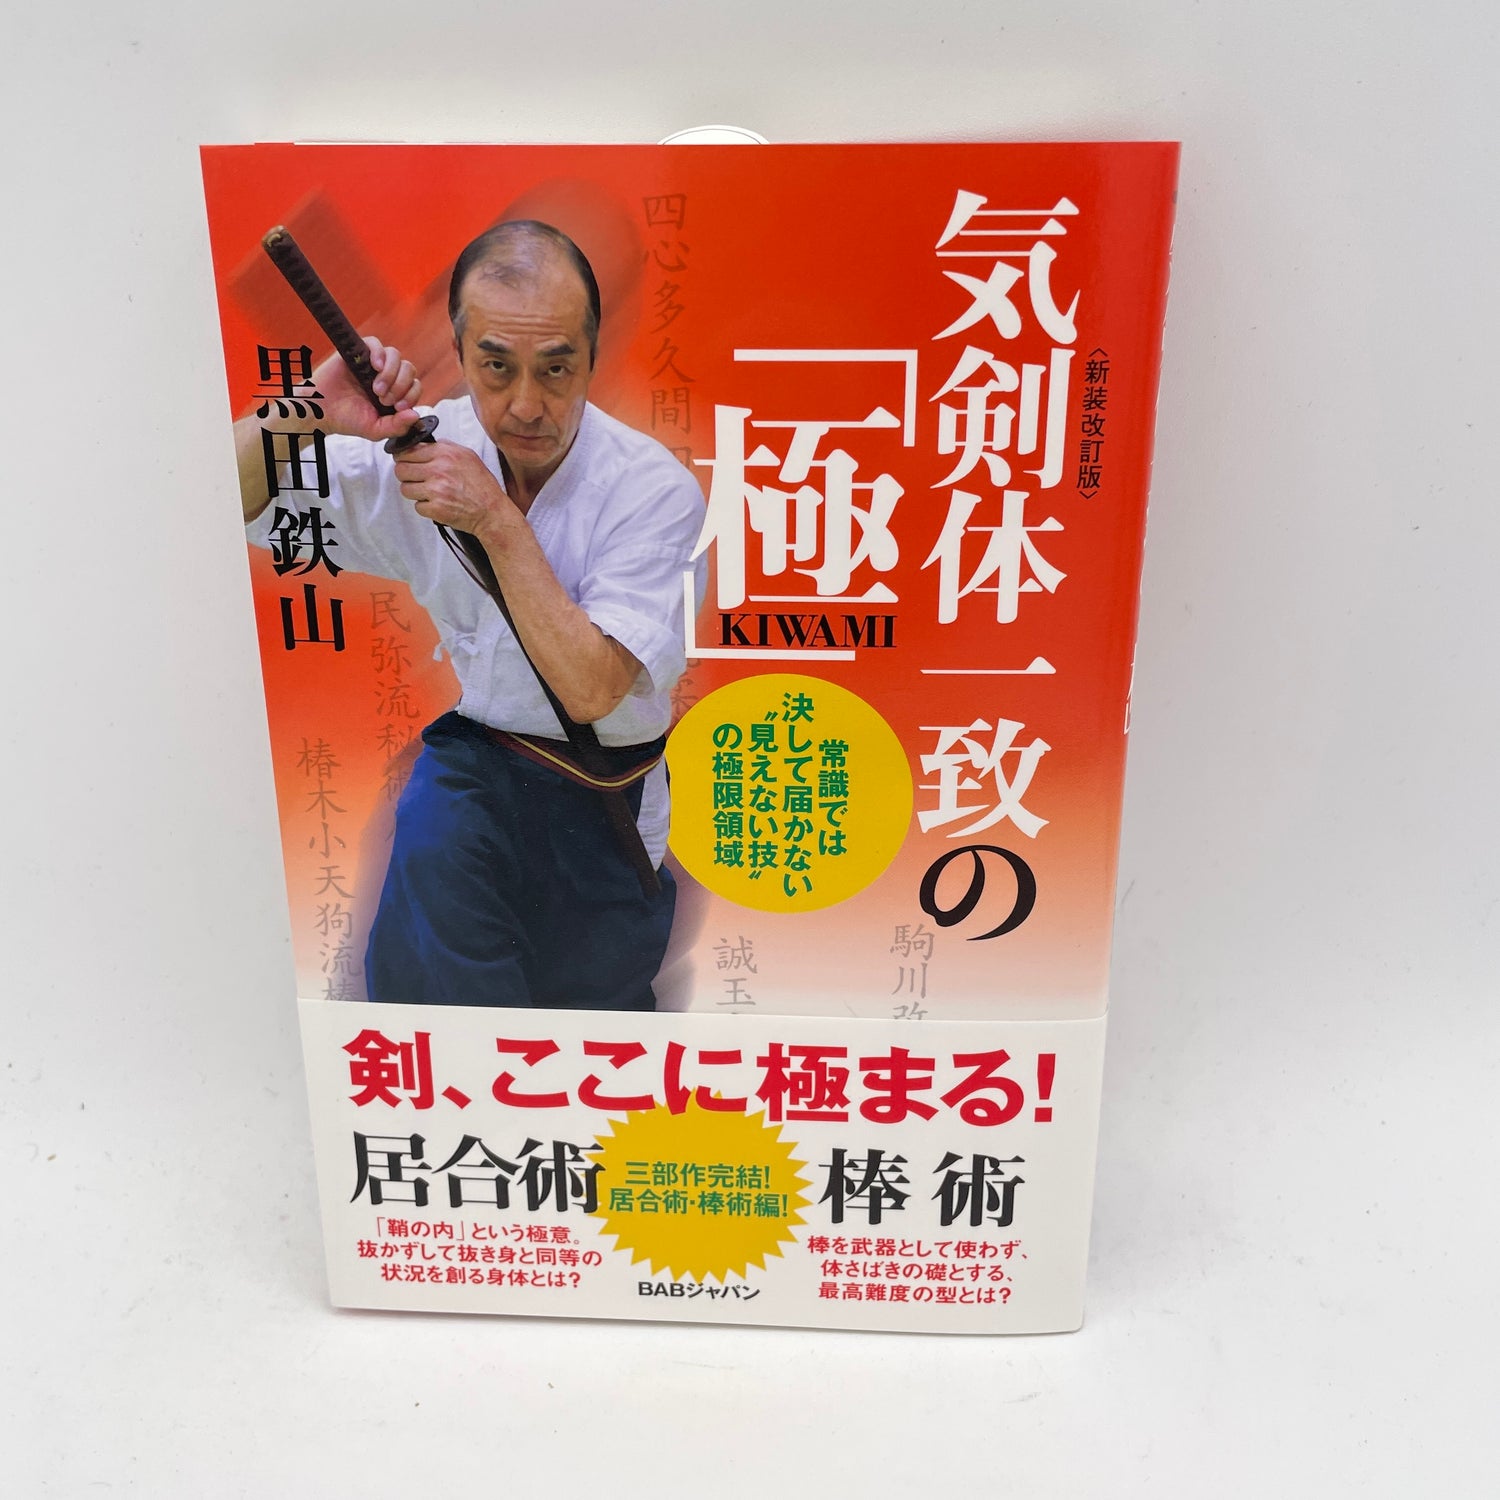 Ki Ken Tai Libro 6: Kiwami de Tetsuzan Kuroda